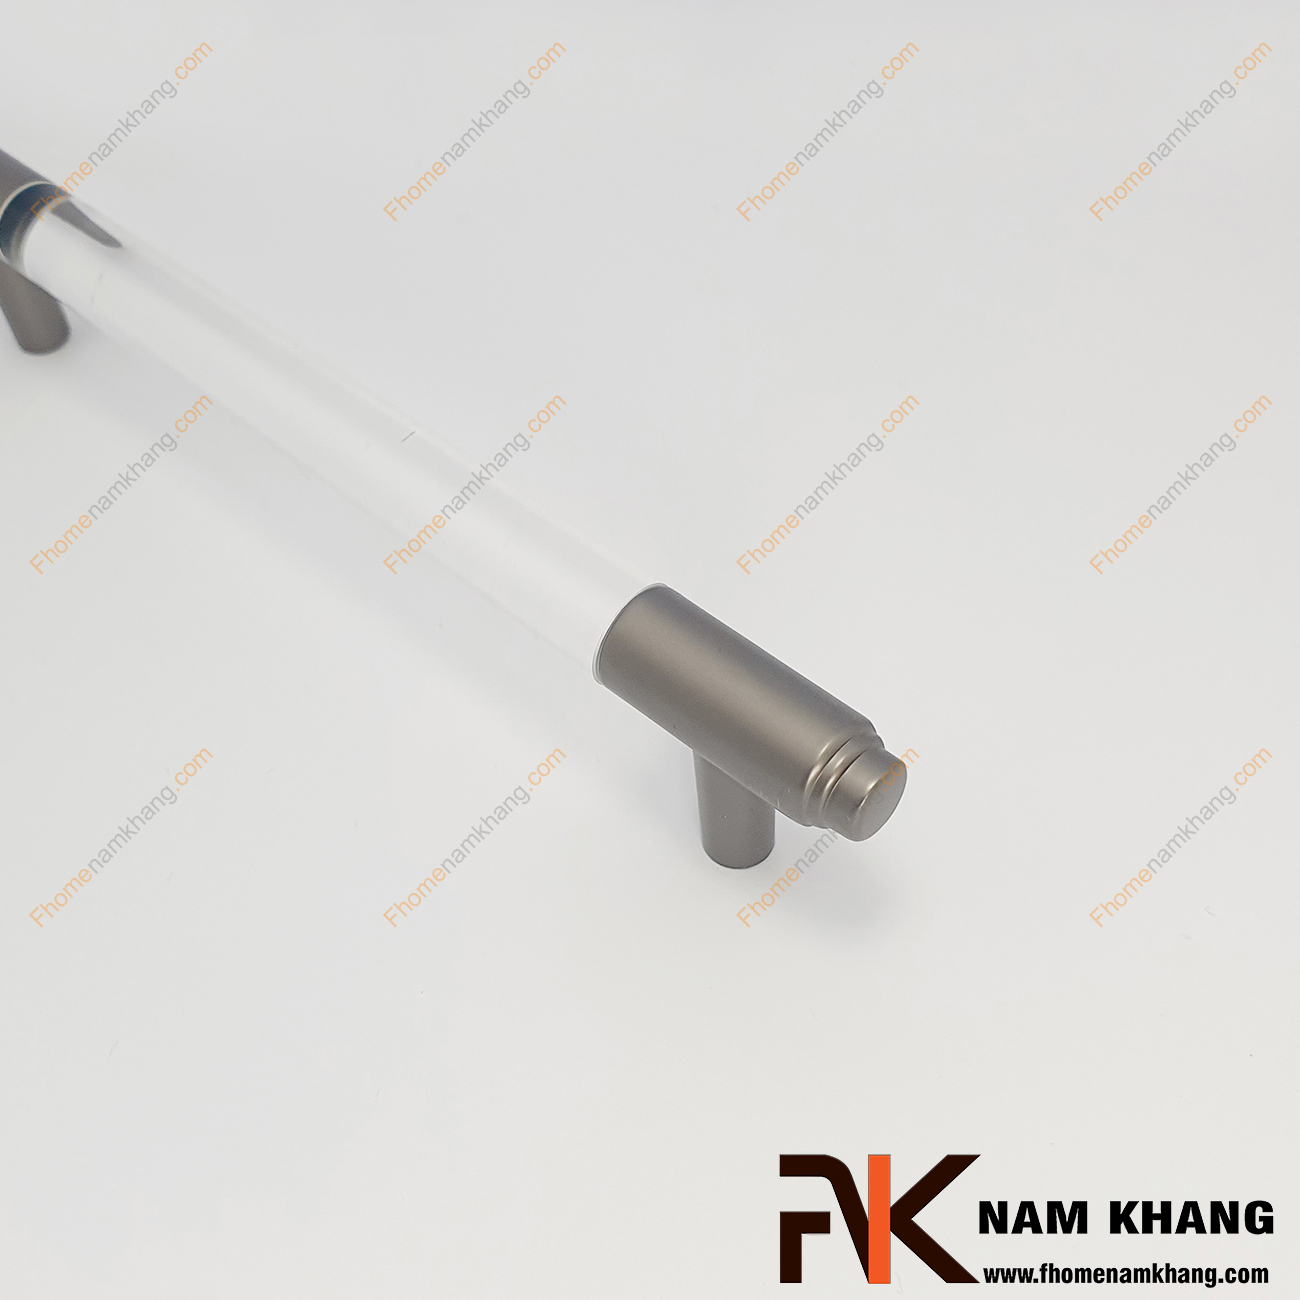 Tay nắm tủ dạng thanh tròn NK465-TX là dạng tay nắm tủ phối hợp giữa dòng hợp kim cao cấp và keo epoxy trong suốt tạo thành dòng sản phẩm chất lượng.